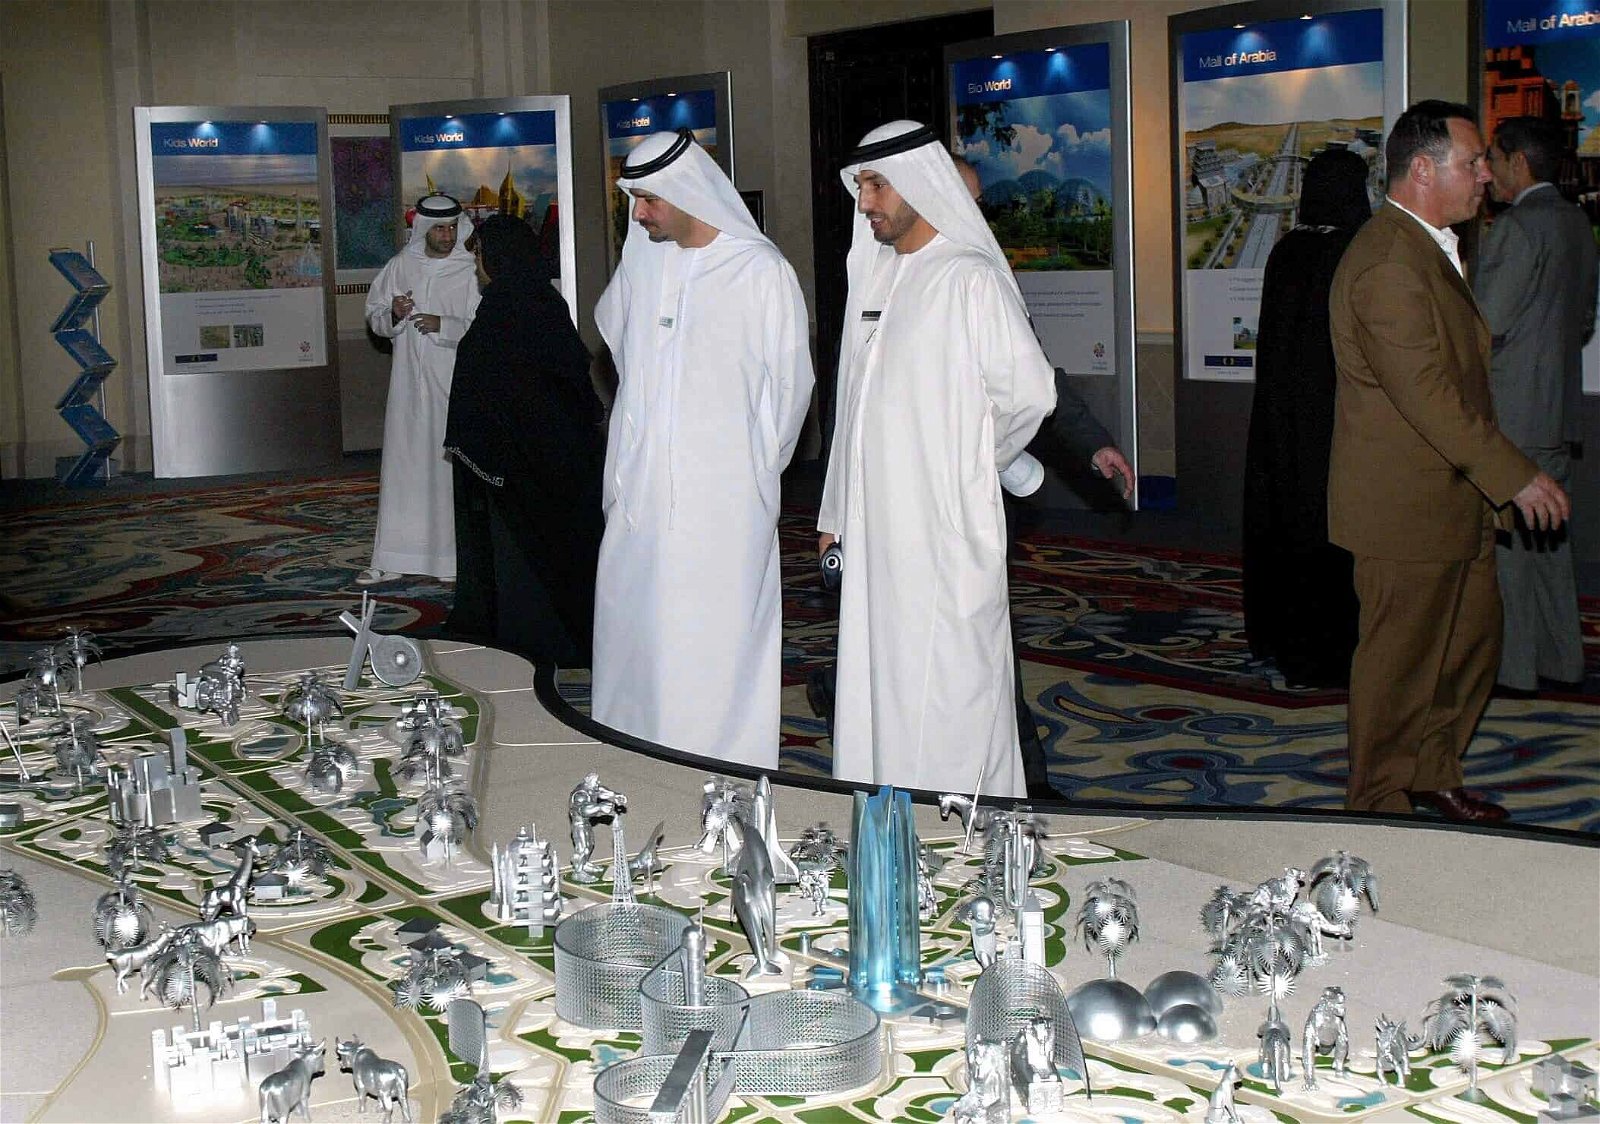 Twee mannen in een wit kleed kijken naar een grote maquette van Dubailand.